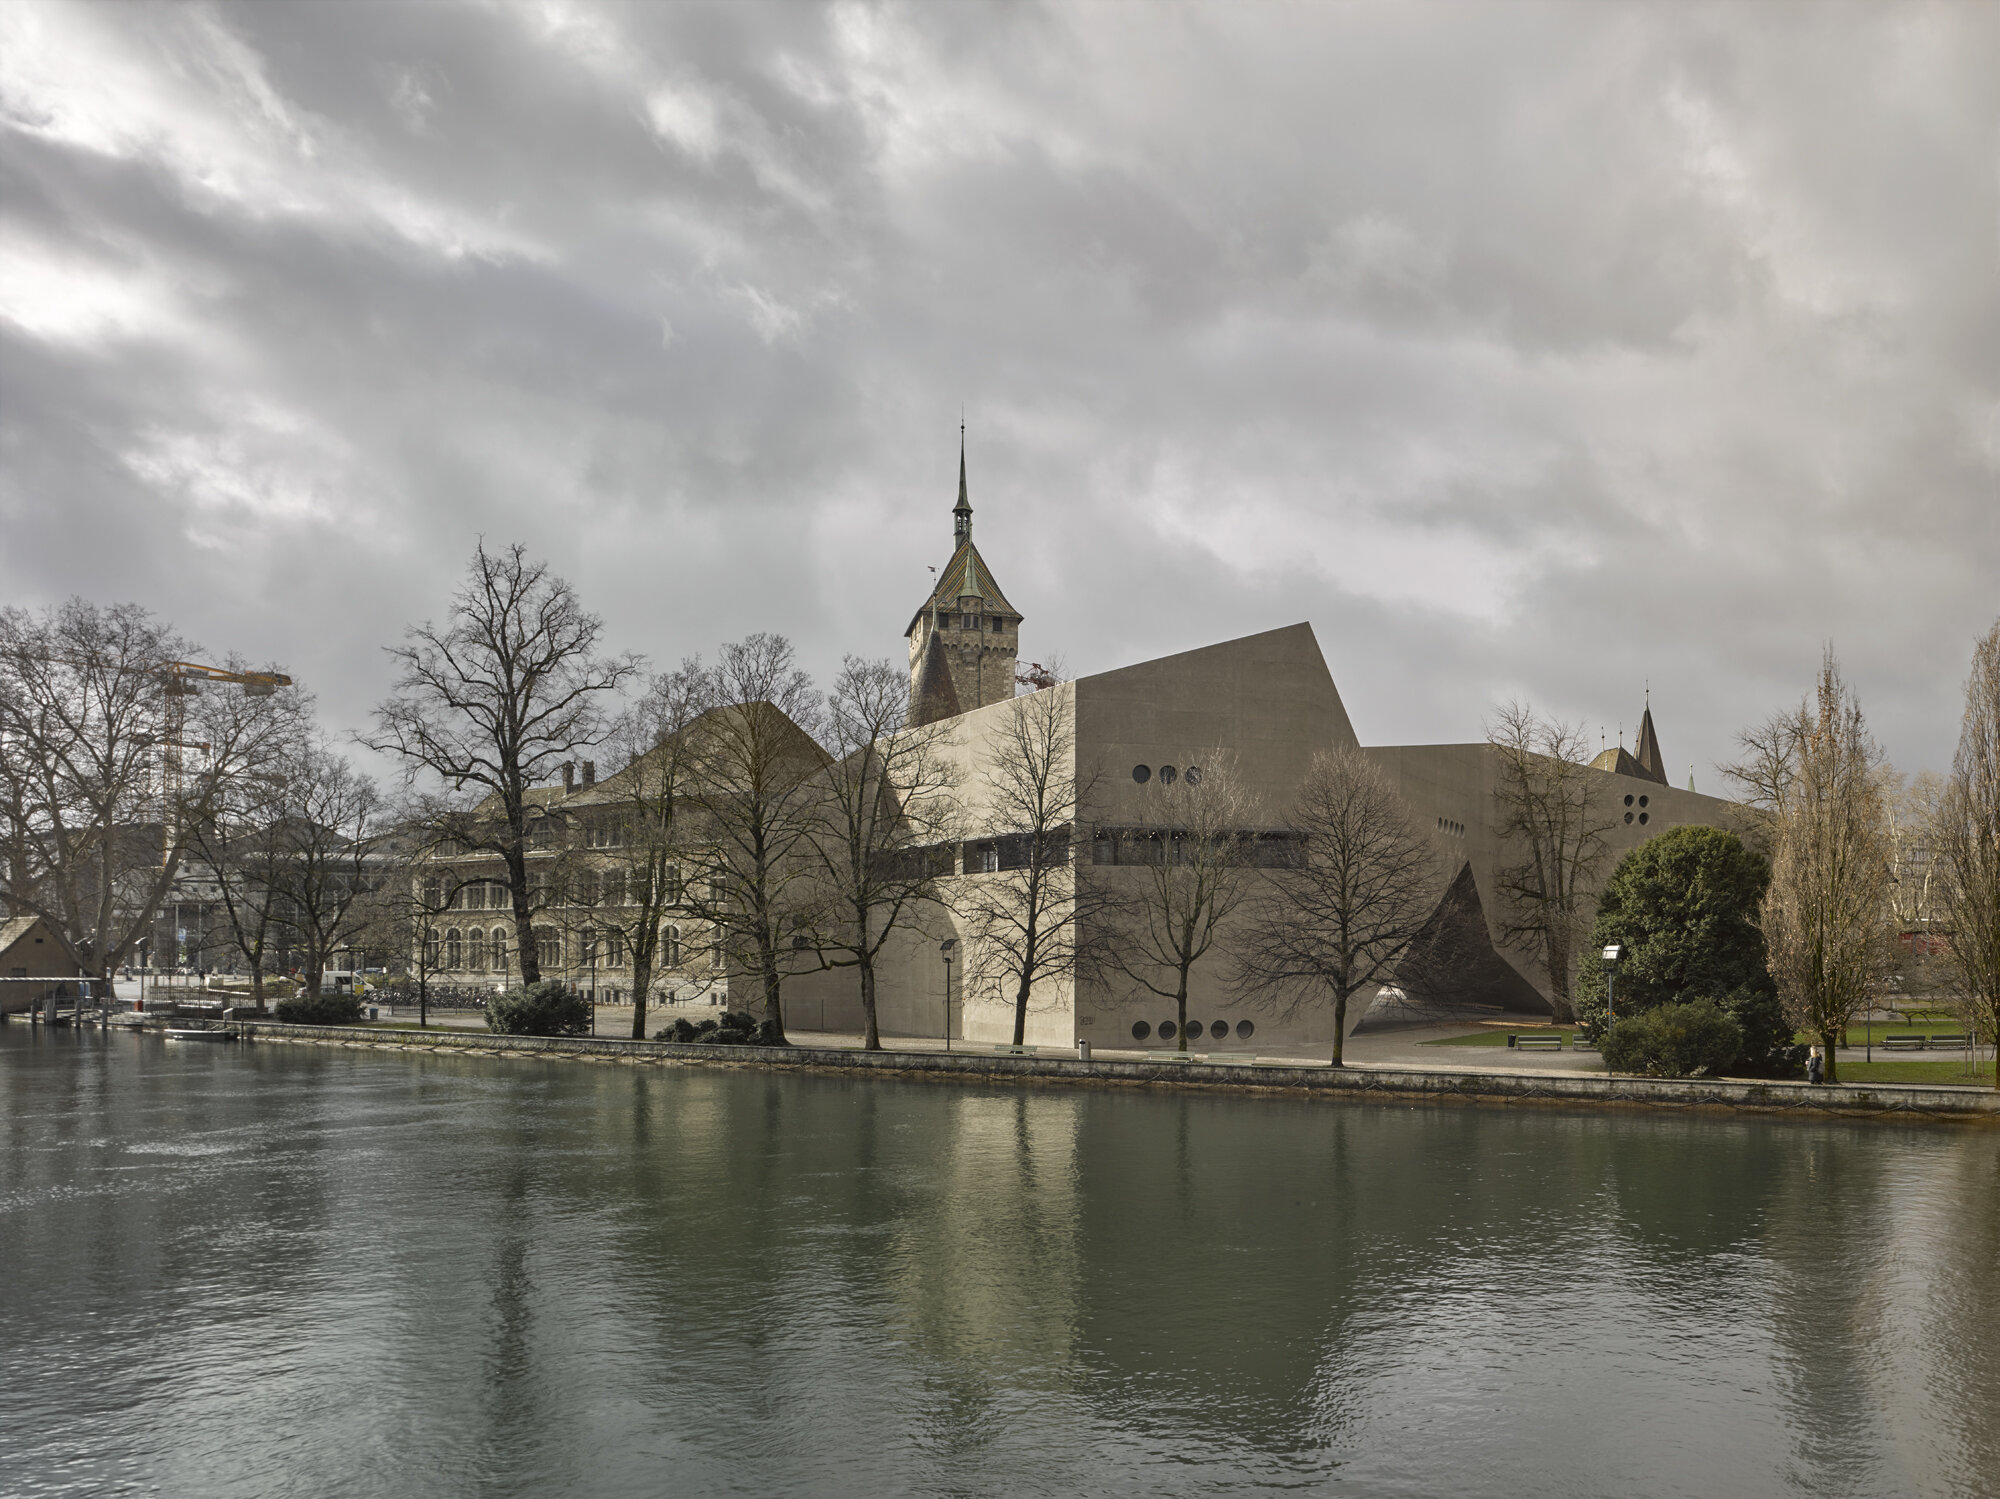  The National Museum of Switzerland,  Christ &amp; Gantenbein  